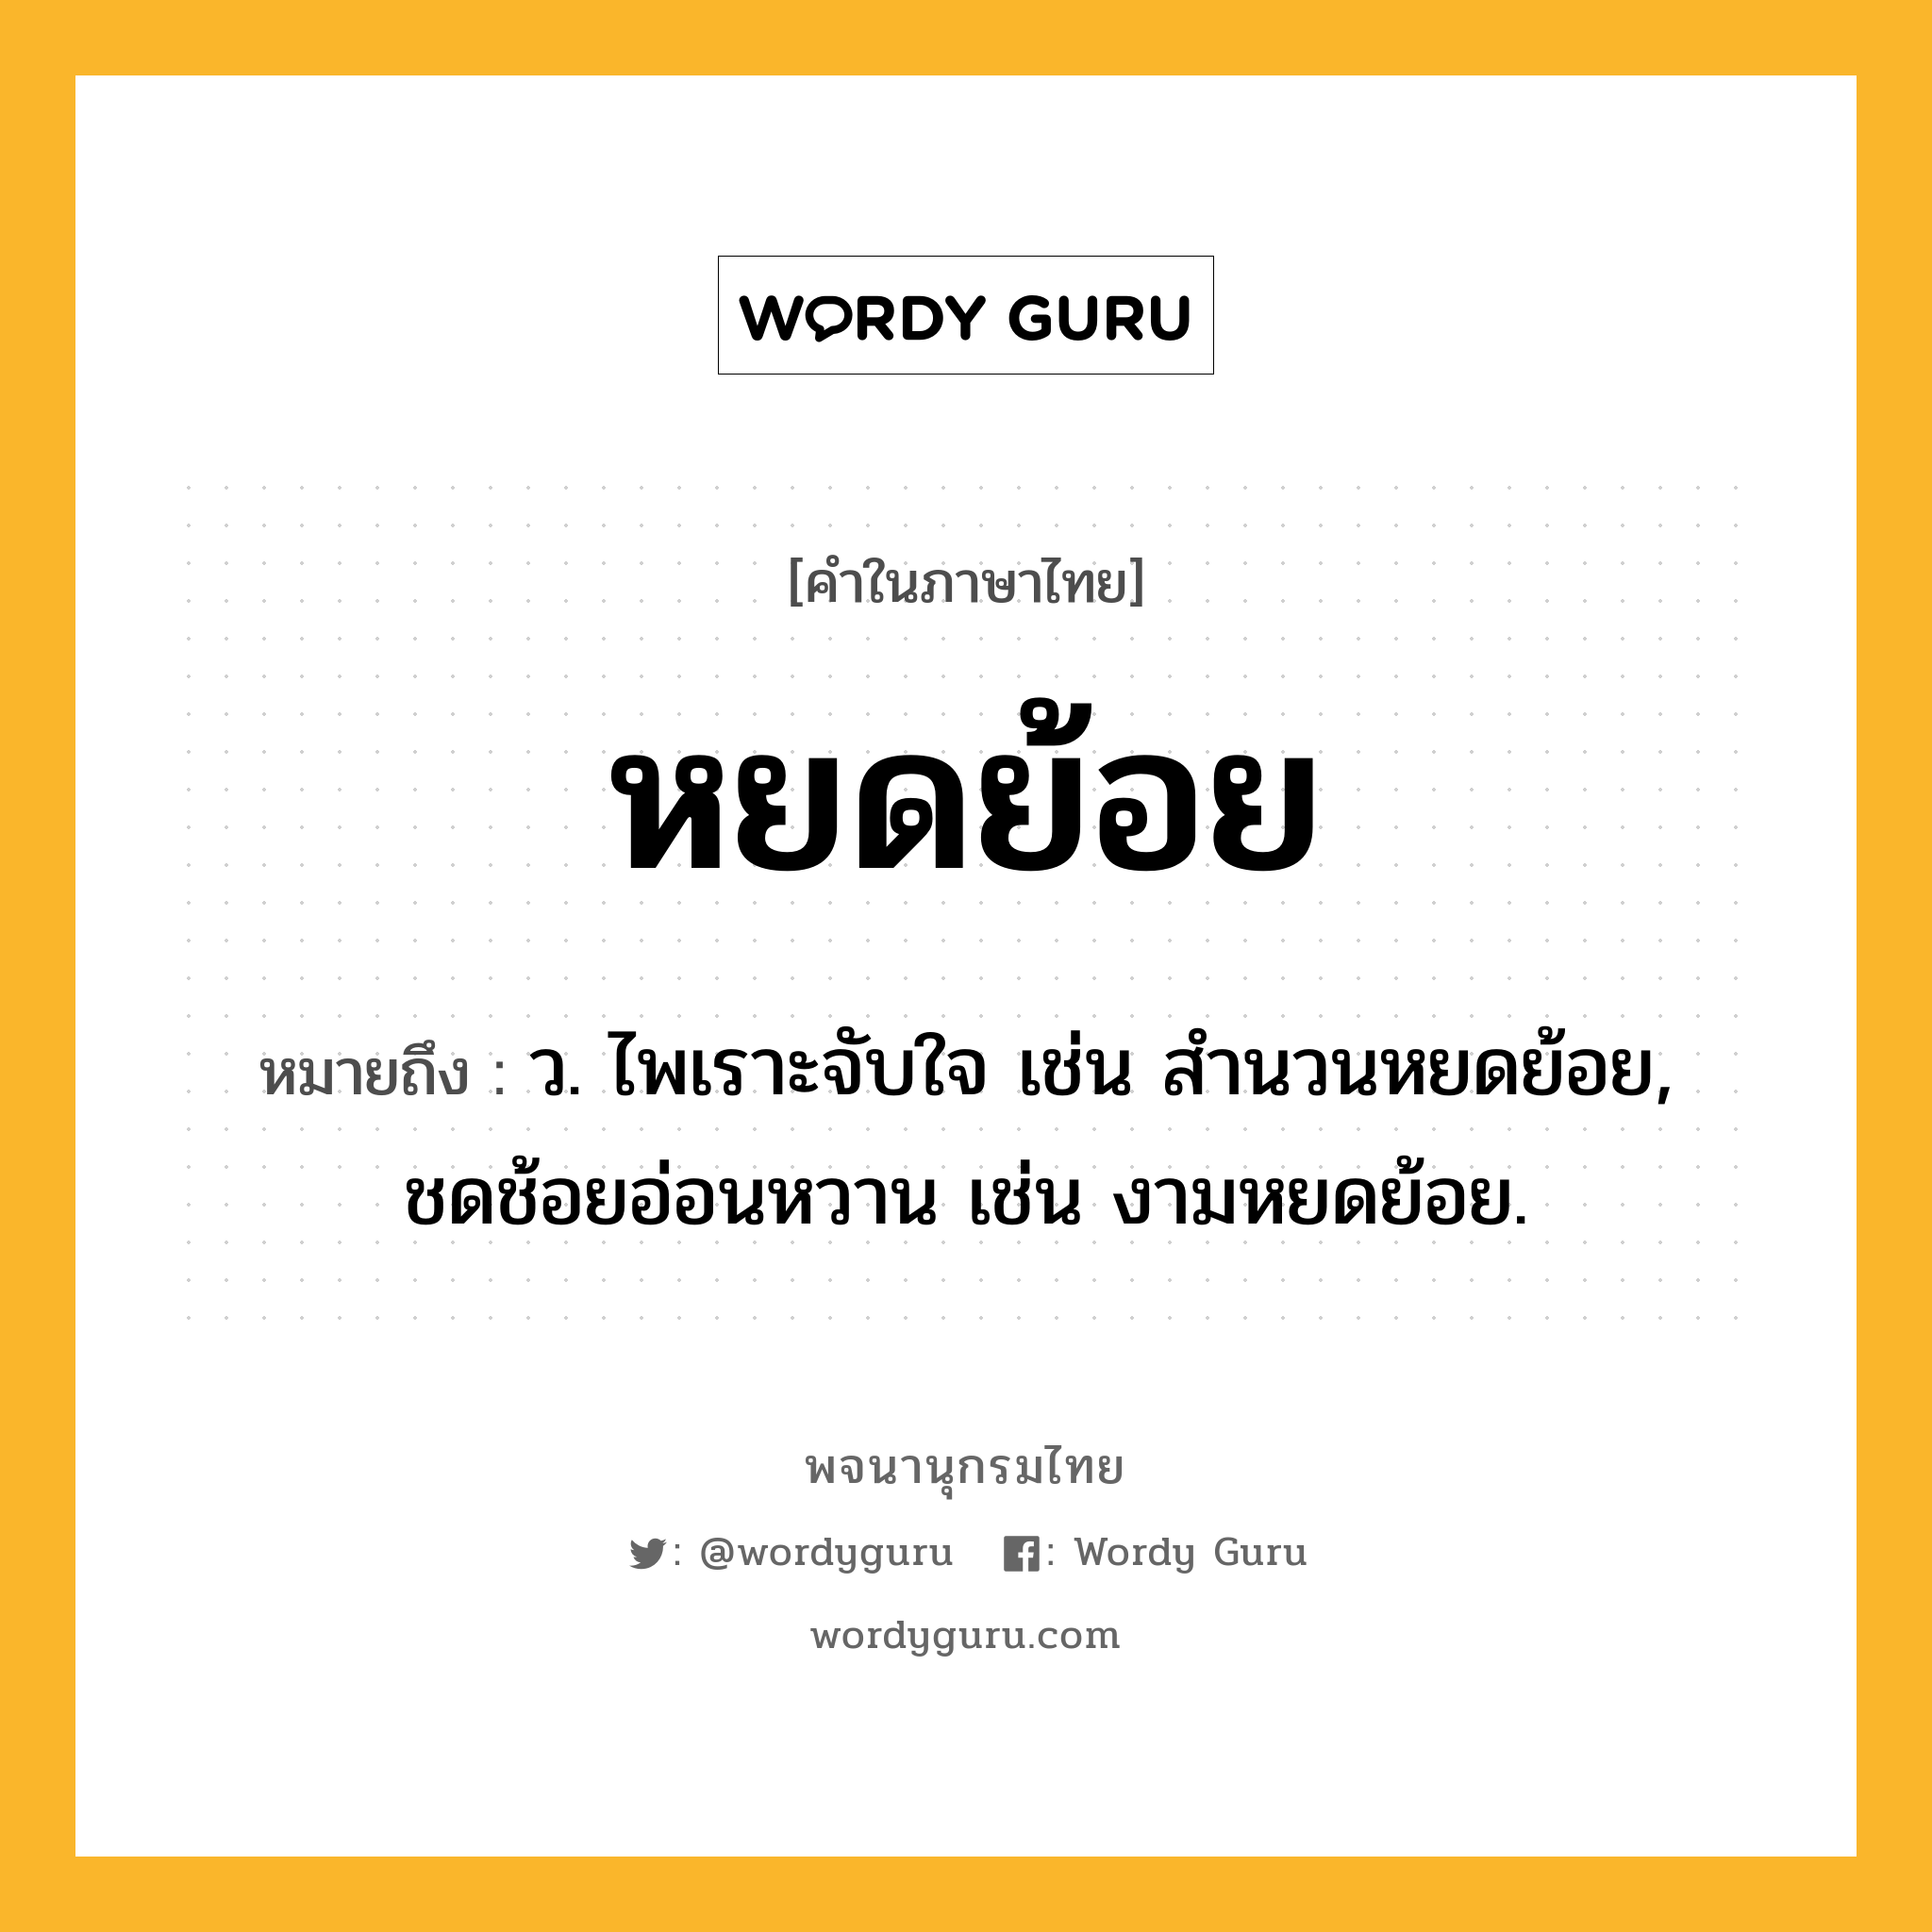 หยดย้อย ความหมาย หมายถึงอะไร?, คำในภาษาไทย หยดย้อย หมายถึง ว. ไพเราะจับใจ เช่น สำนวนหยดย้อย, ชดช้อยอ่อนหวาน เช่น งามหยดย้อย.